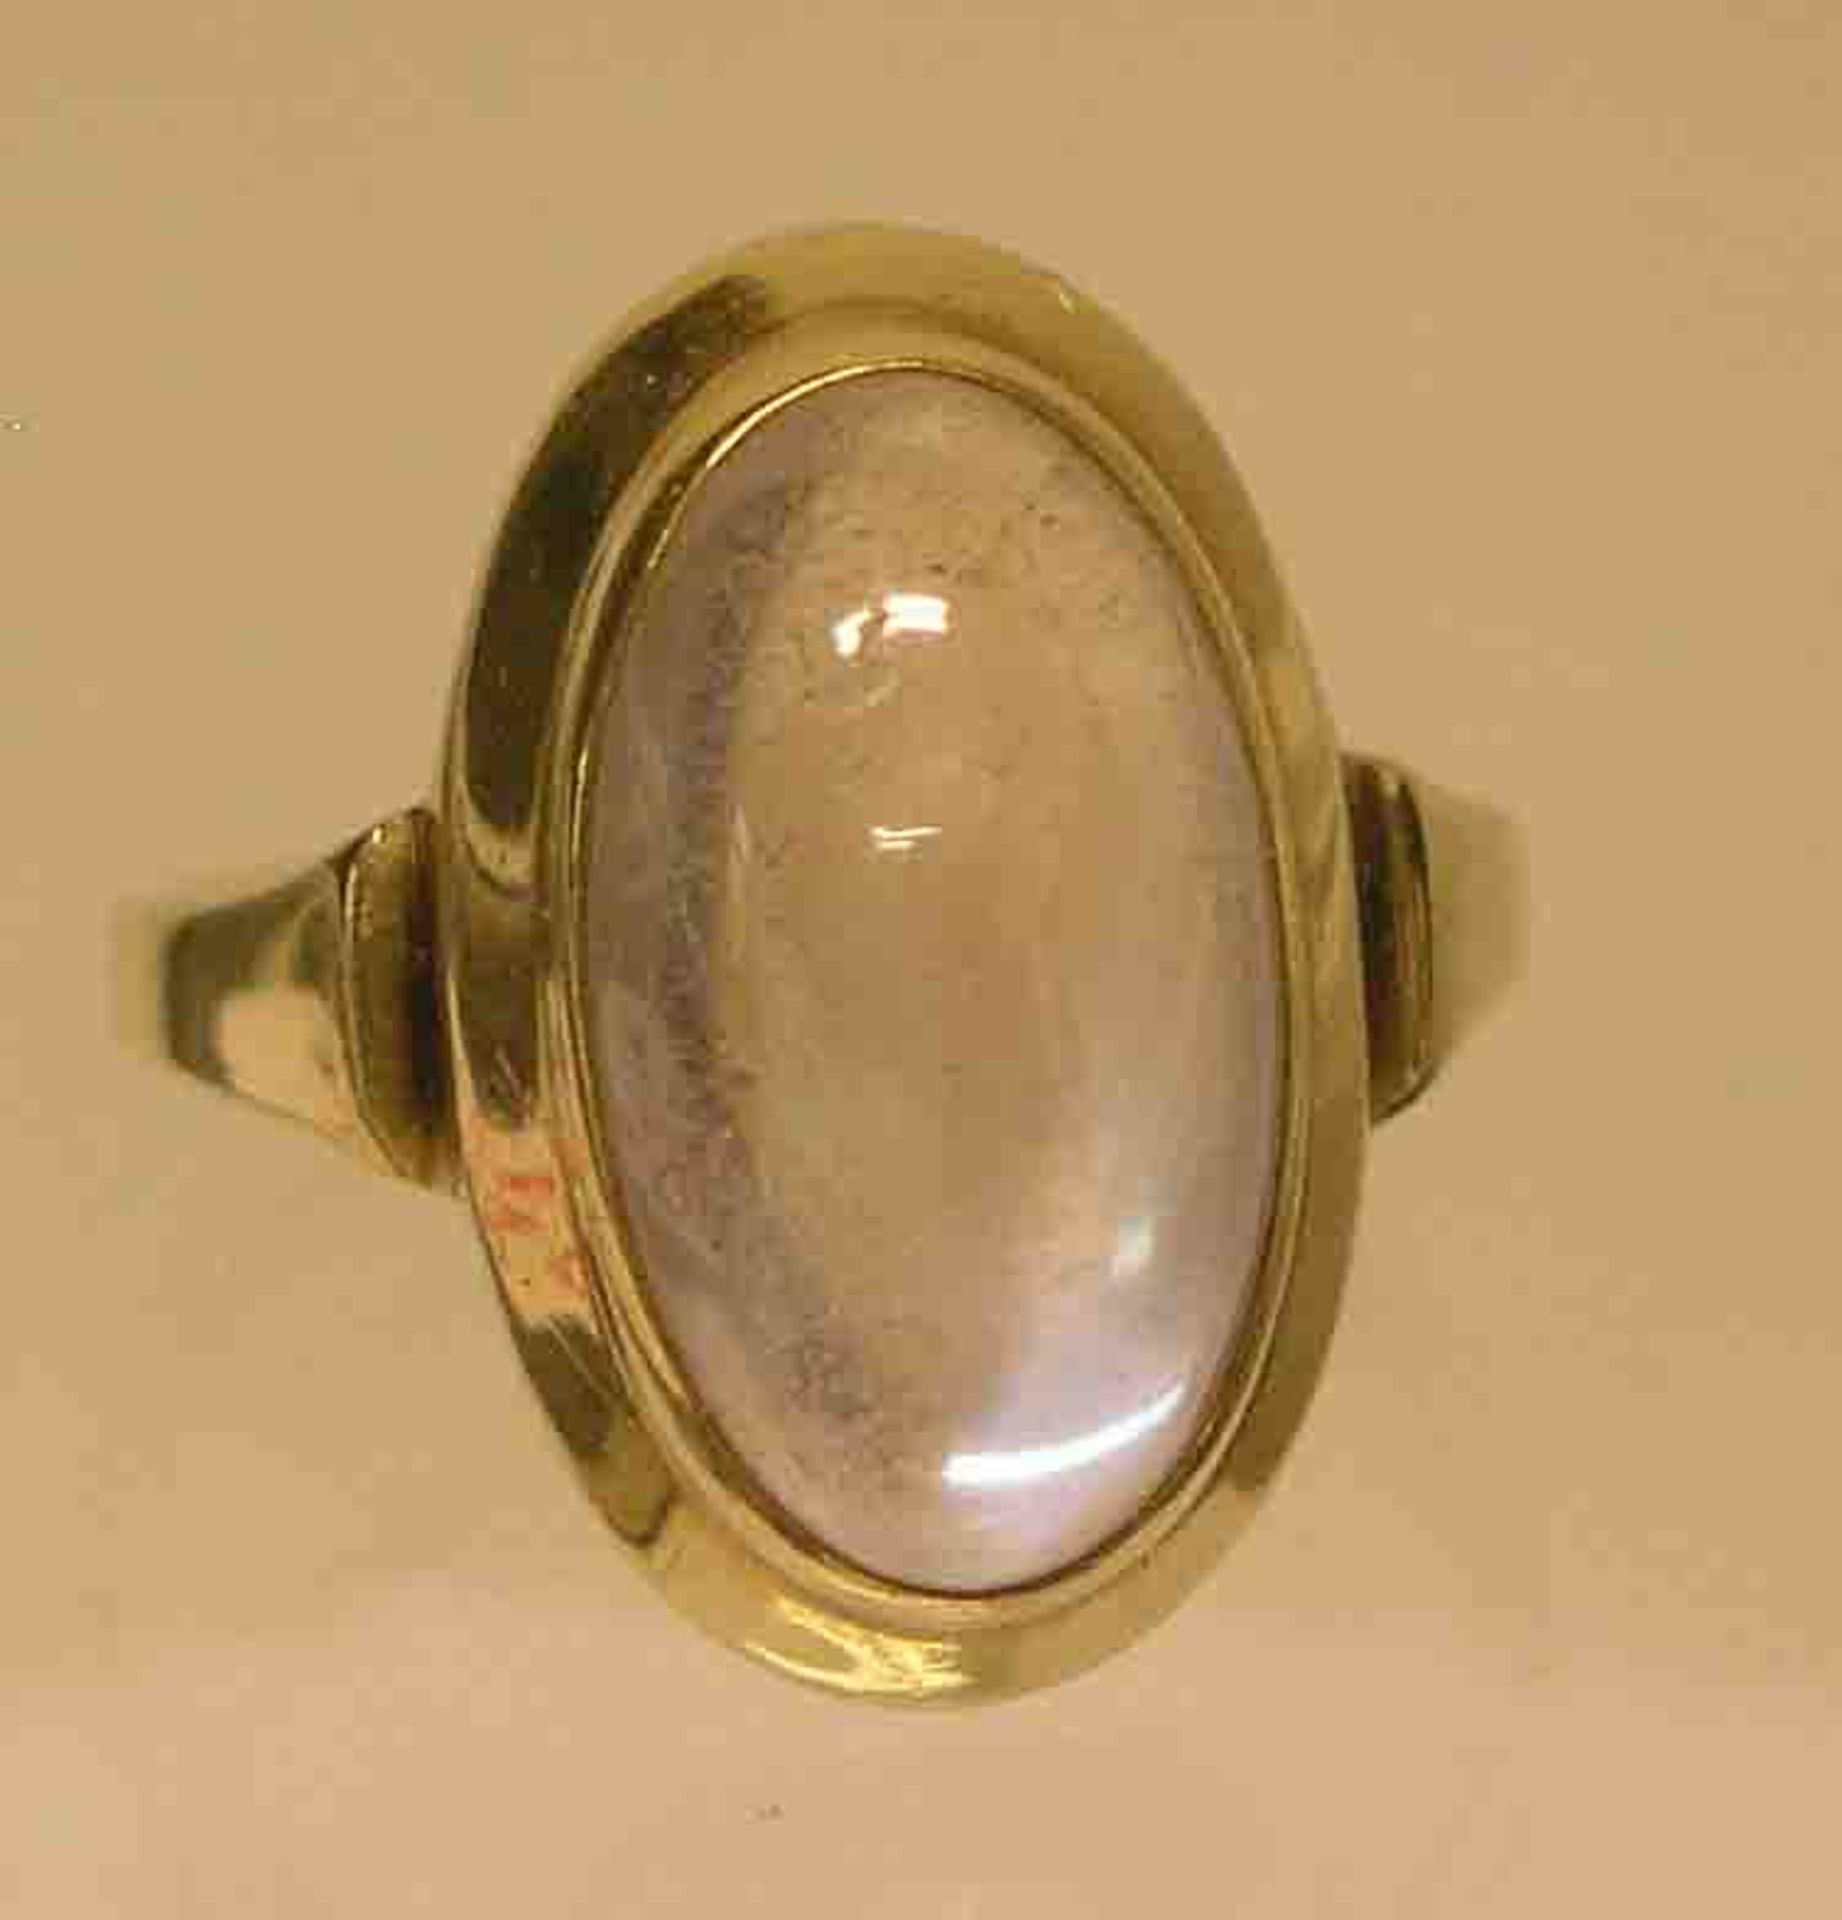 Damenring. Gelbgold 14 kt., ovale Form mit Mondstein, um 1960. Ringgröße: 52. 5,3 Gramm.